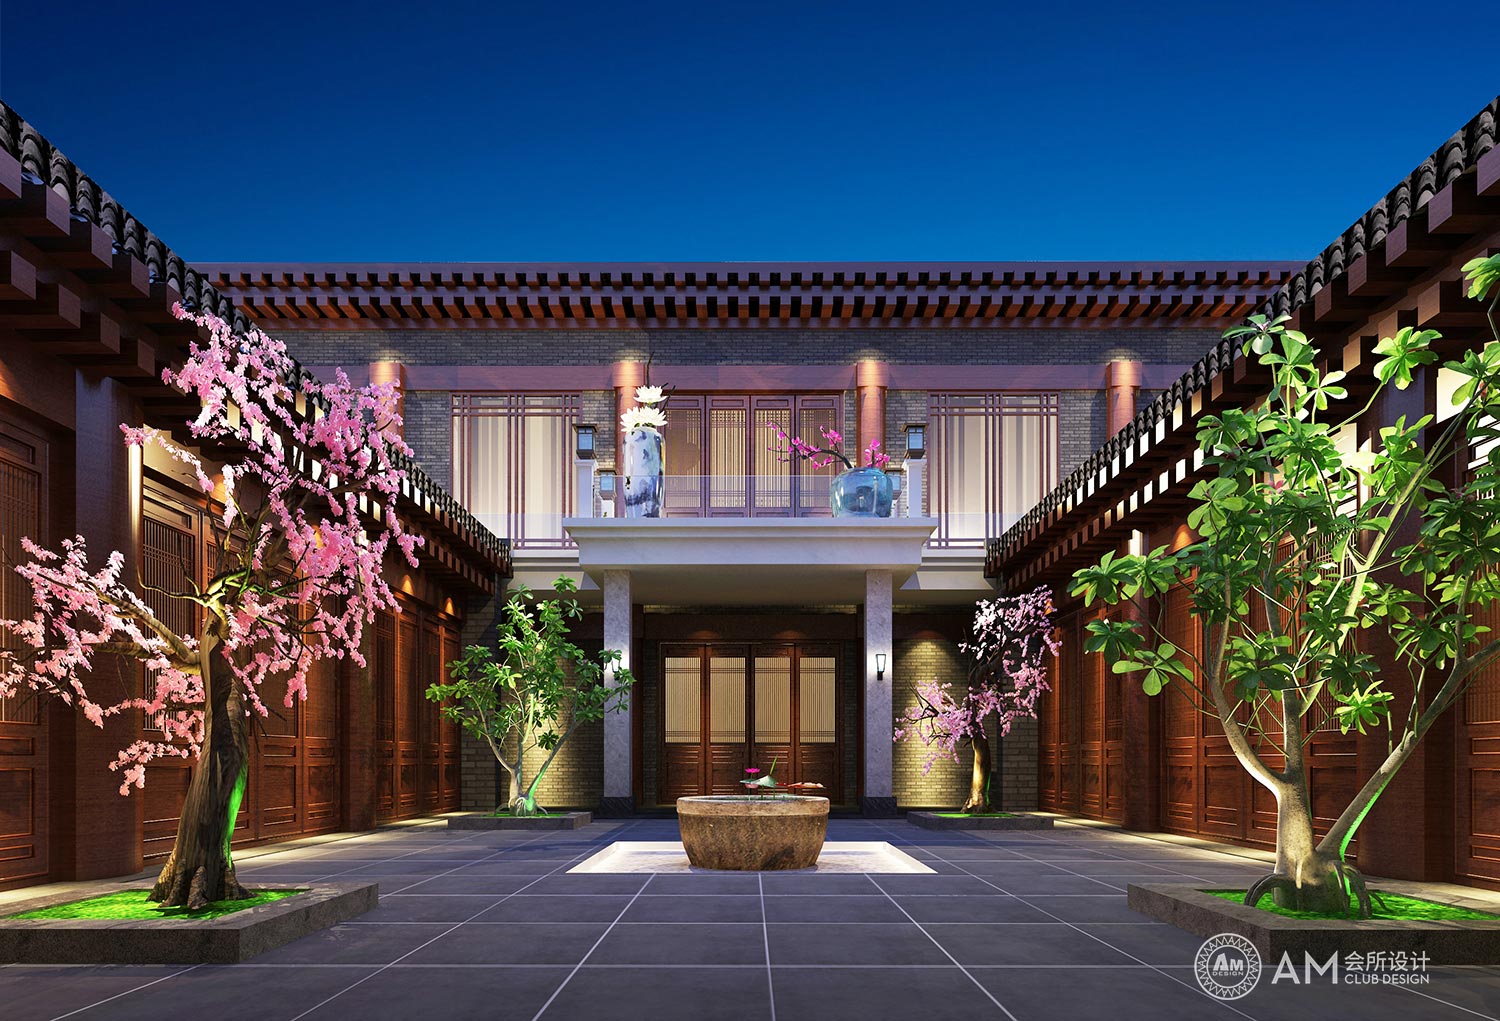 AM DESIGN | The landscape design of the top spa club in Qilin Hui